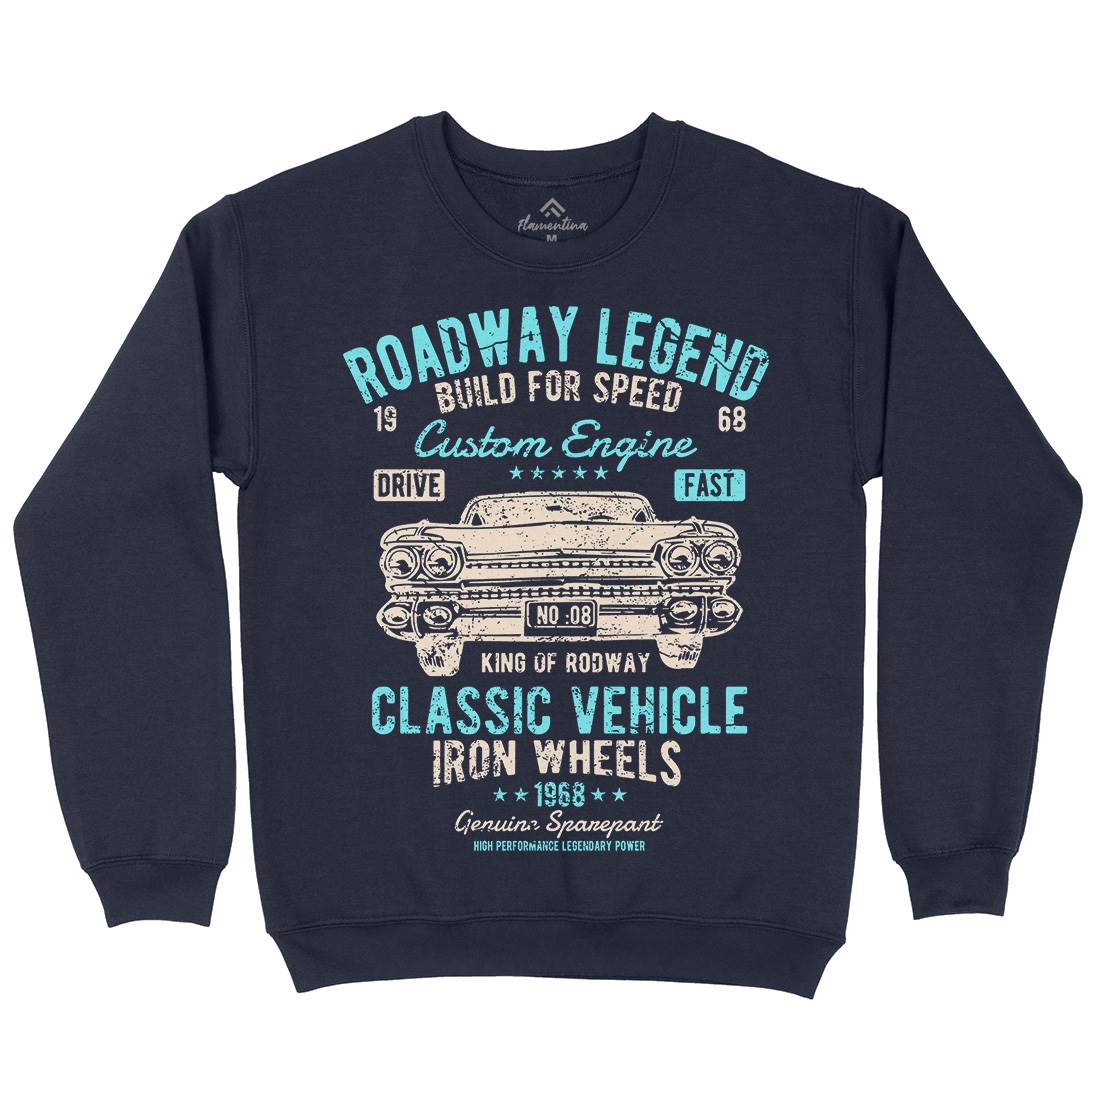 Roadway Legend Mens Crew Neck Sweatshirt Cars A125